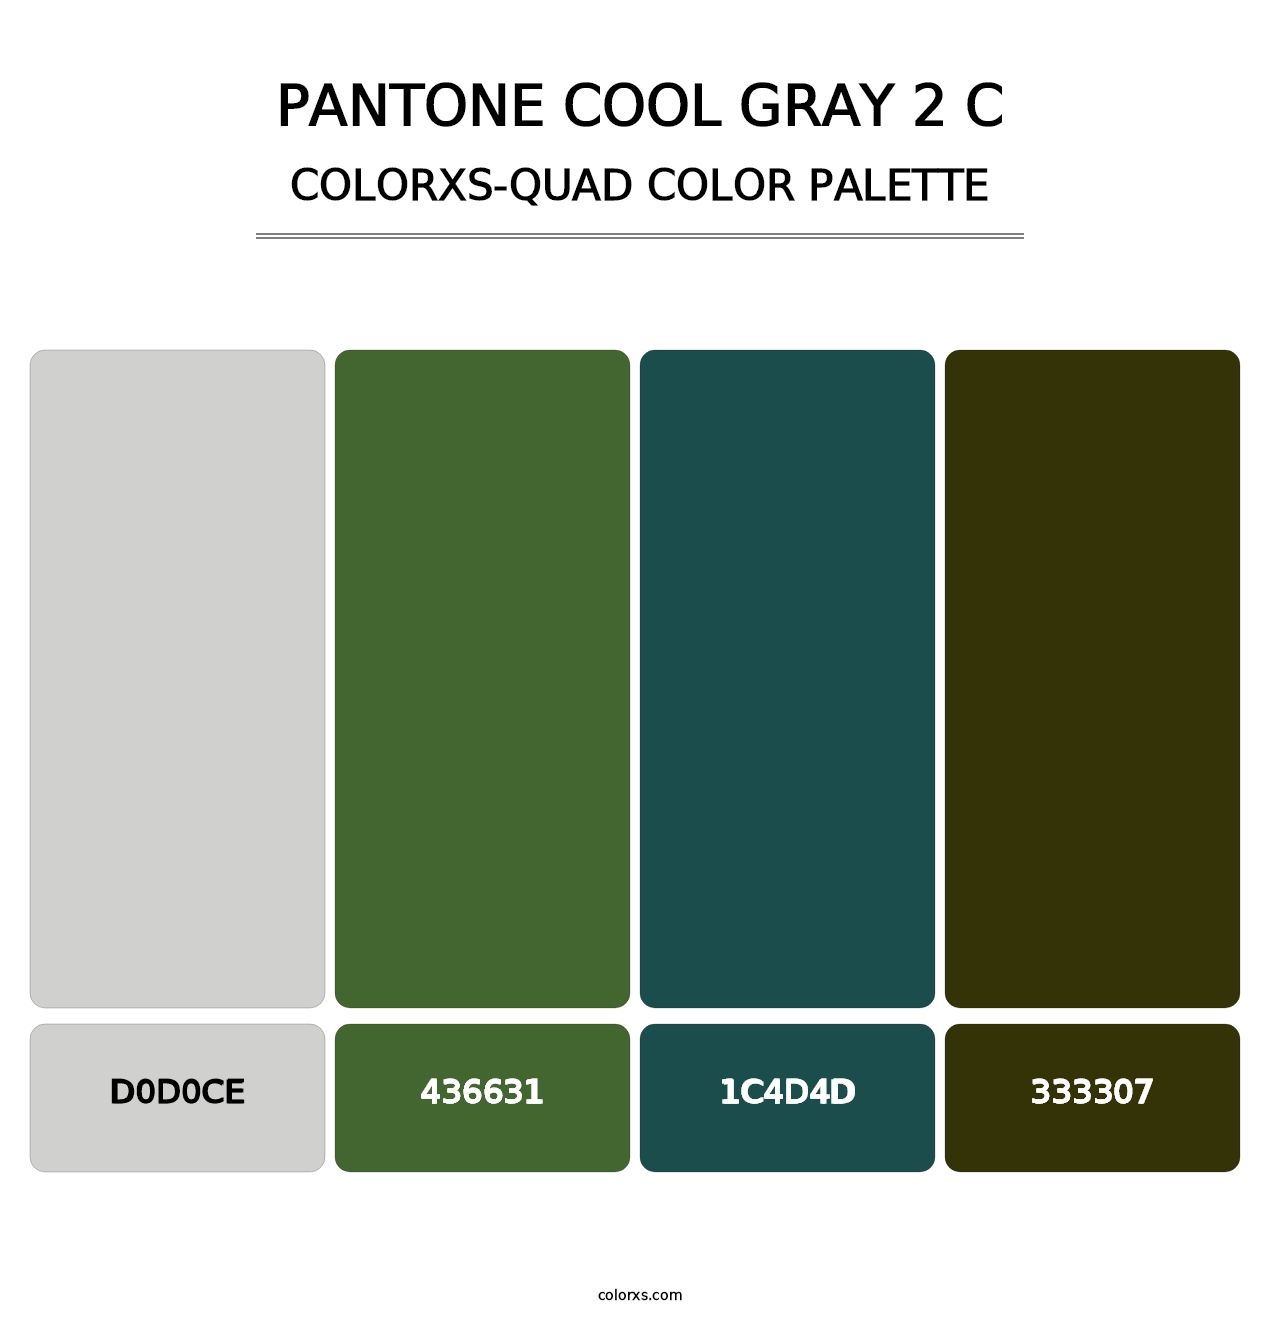 PANTONE Cool Gray 2 C - Colorxs Quad Palette